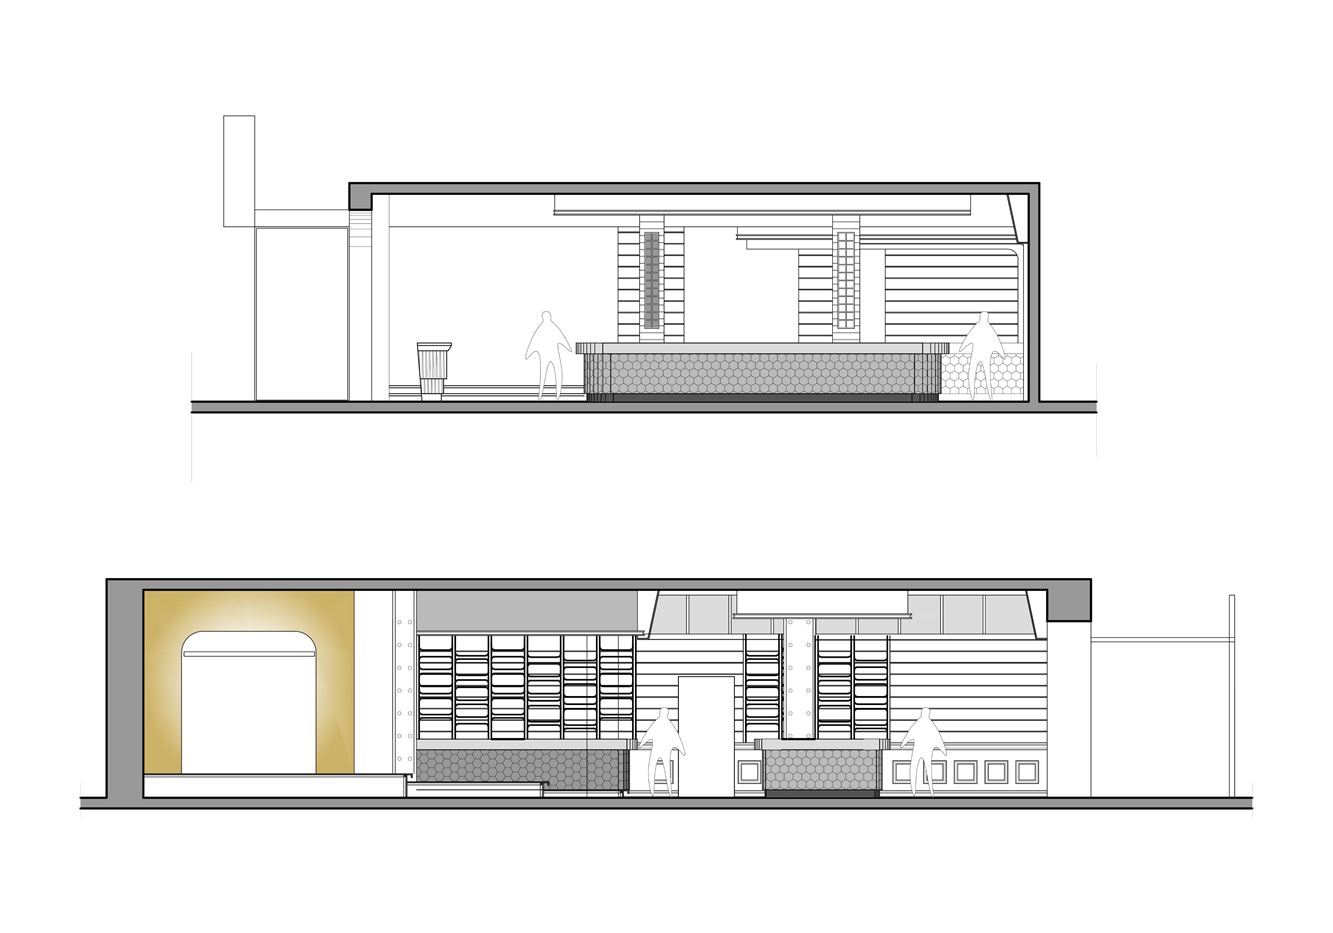 餐饮空间设计立面图 中式餐饮空间立面图高清图 餐饮空间设计多少钱一